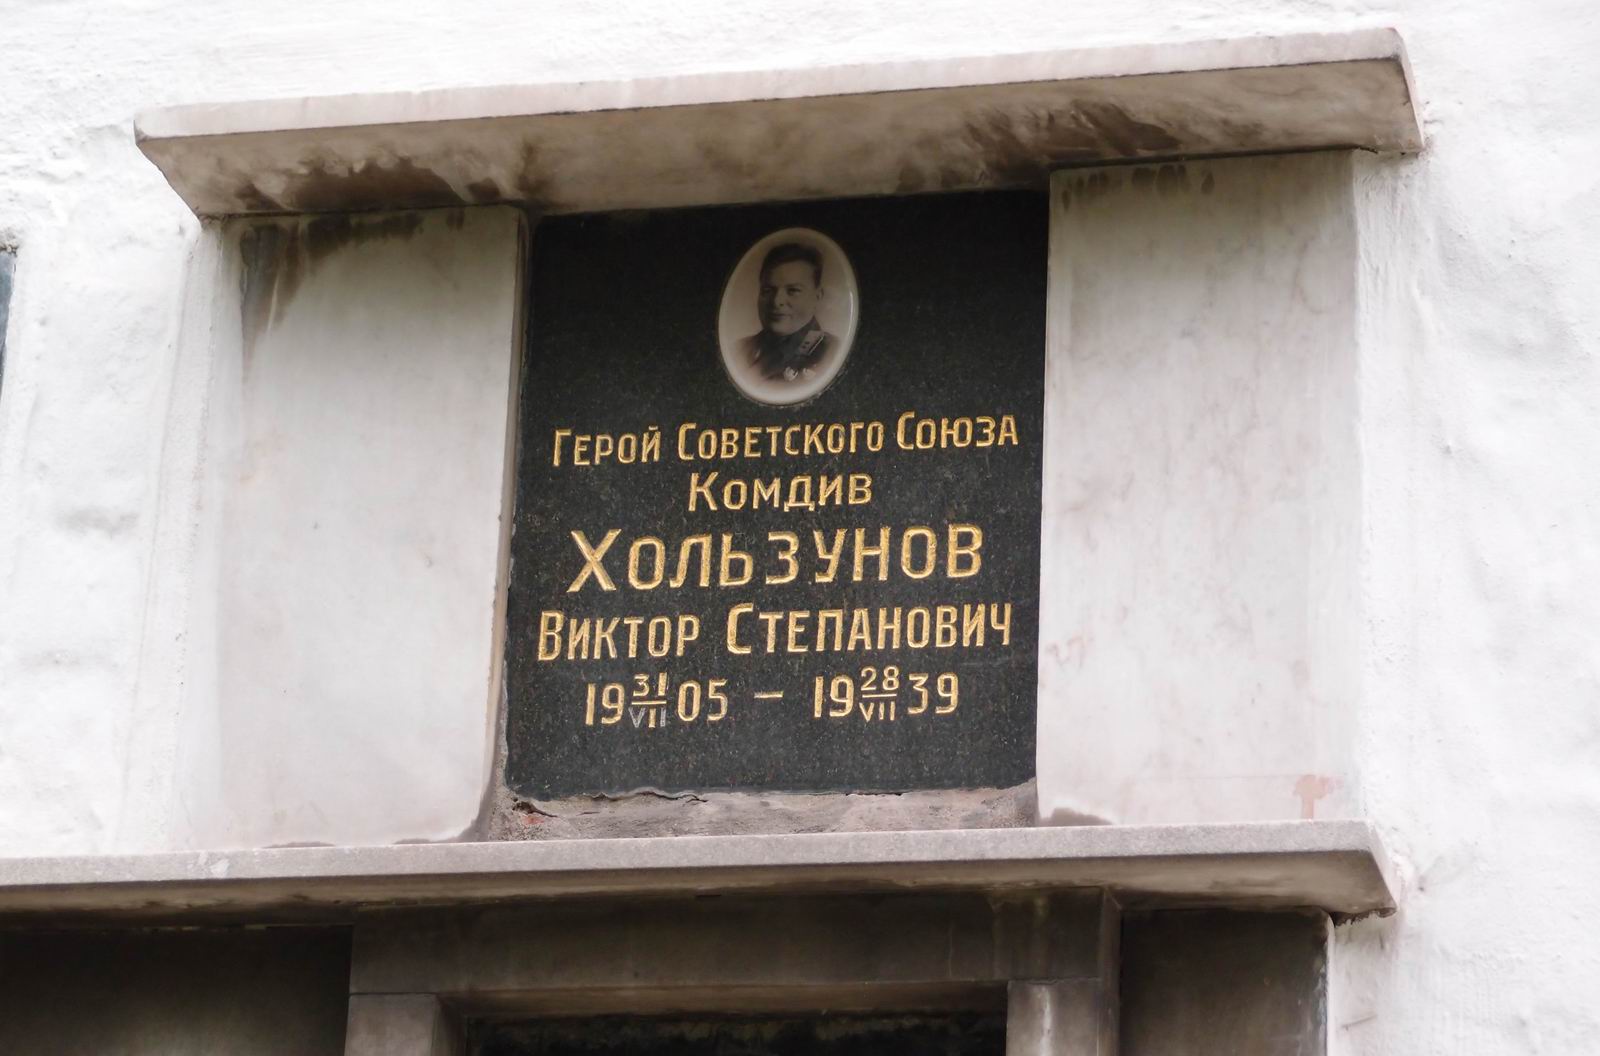 Плита на нише Хользунова В.С. (1905-1939), на Новодевичьем кладбище (колумбарий [5]-14-1). Нажмите левую кнопку мыши чтобы увидеть вариант до 2015.